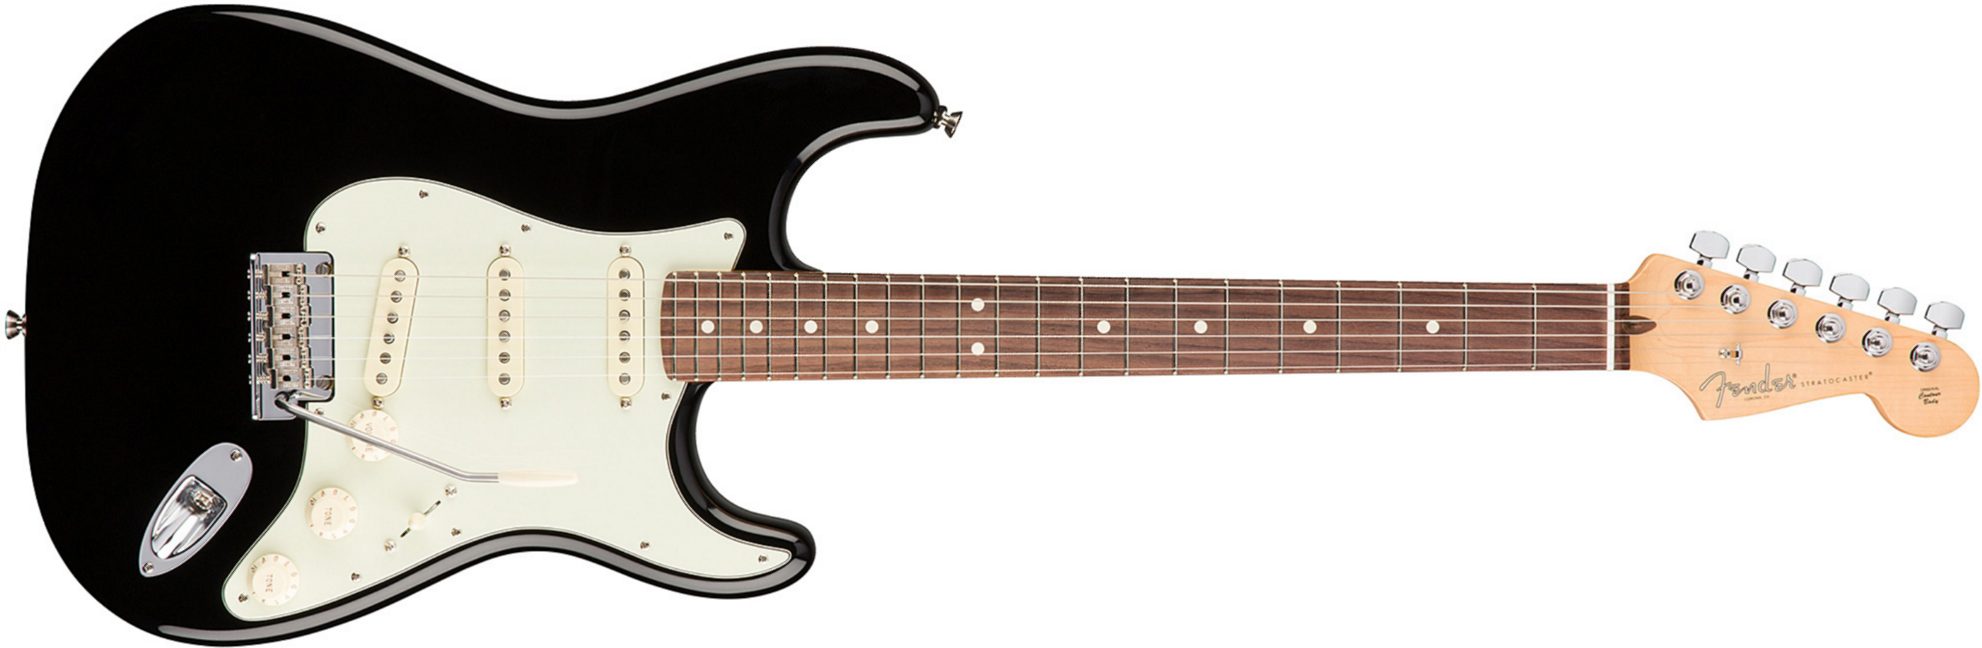 Fender Strat American Professional 2017 3s Usa Rw - Black - Guitare Électrique Forme Str - Main picture